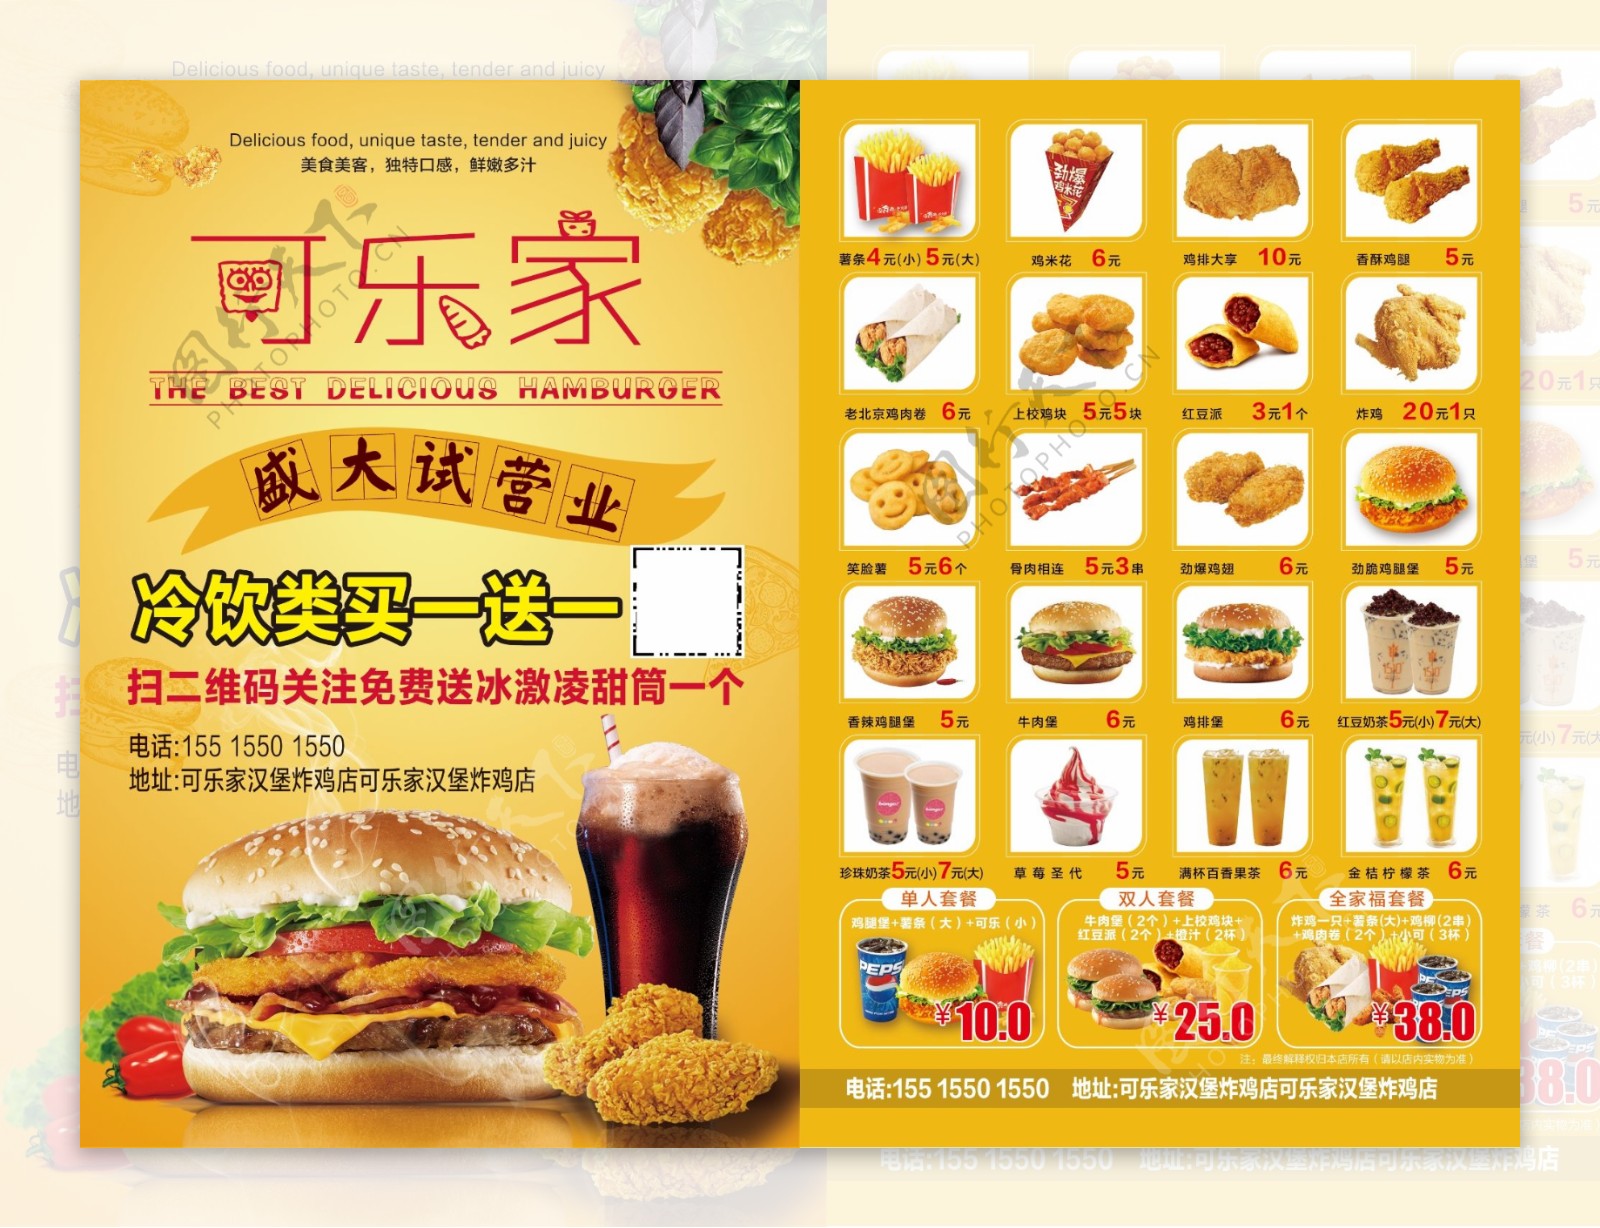 汉堡炸鸡盛大开业彩页宣传单